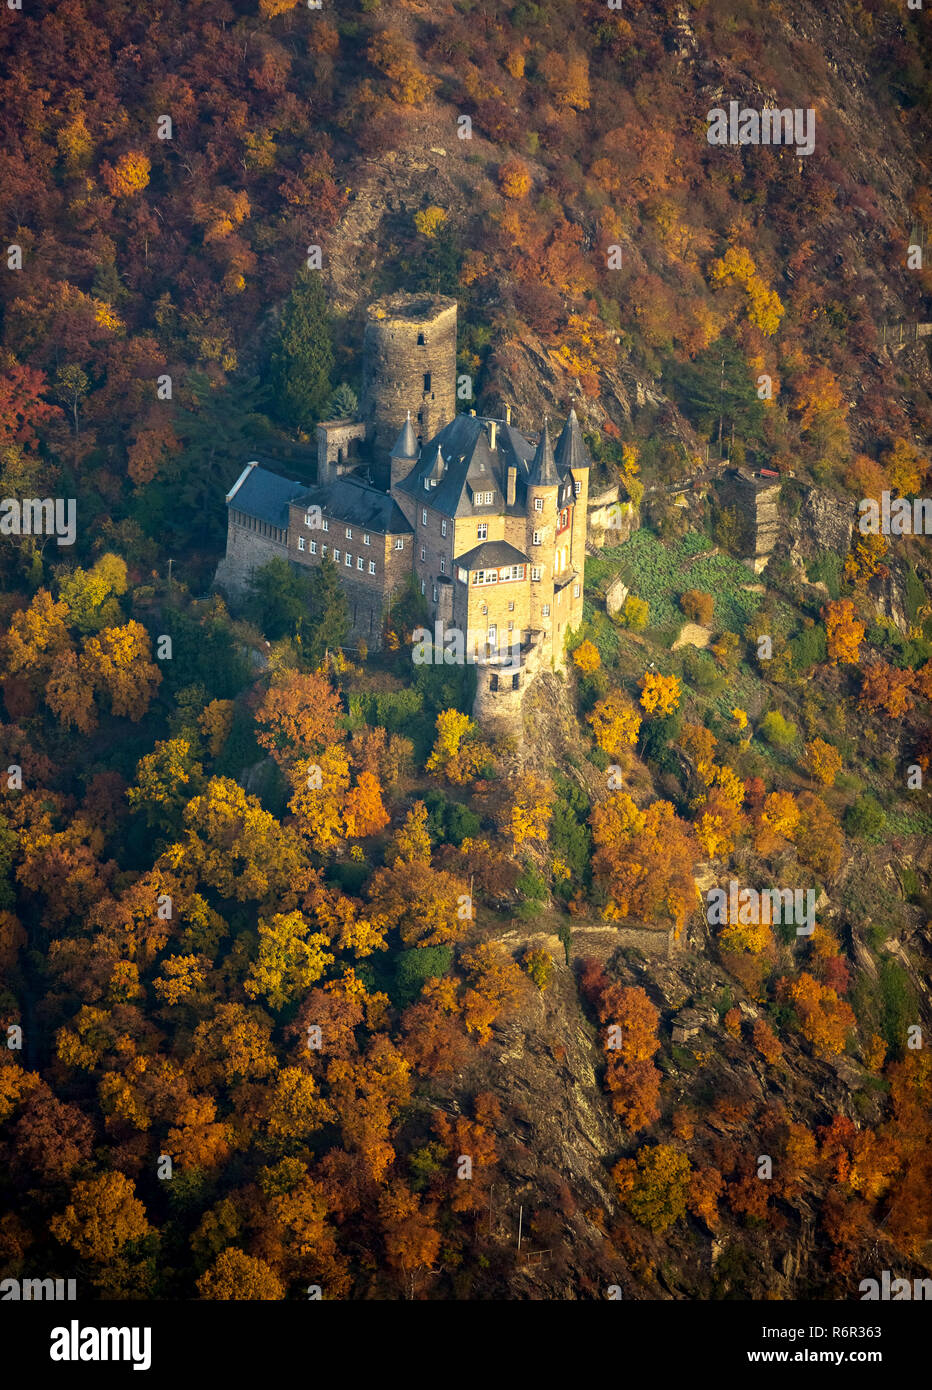 Burg Katz im Rheintal, Rhein bei St.Goarshausen,  Sankt Goar, Rheintal, Rheinland-Pfalz, Deutschland Stock Photo